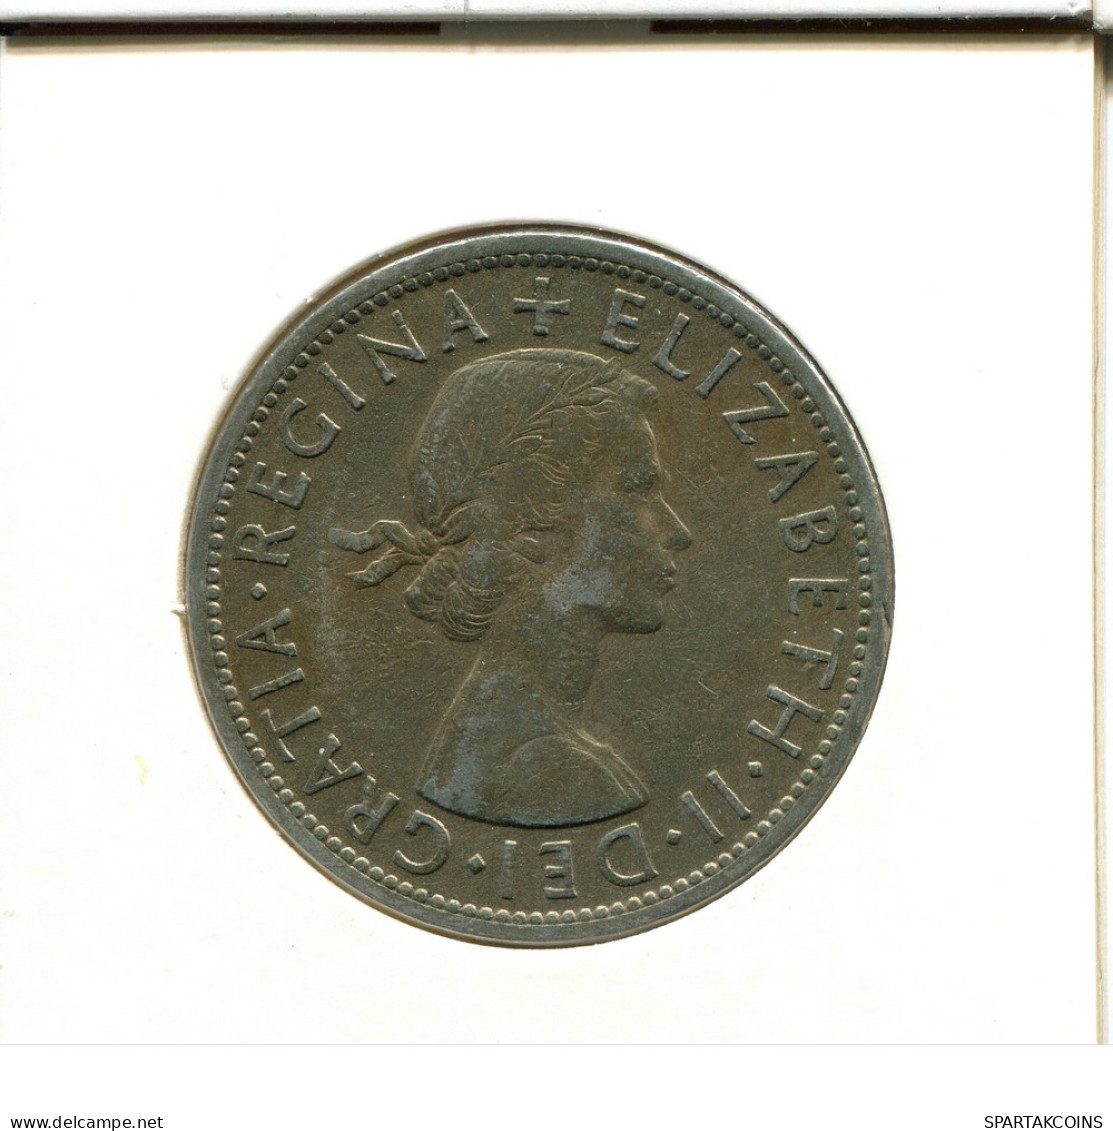 HALF CROWN 1954 UK GROßBRITANNIEN GREAT BRITAIN Münze #BB141.D - K. 1/2 Crown